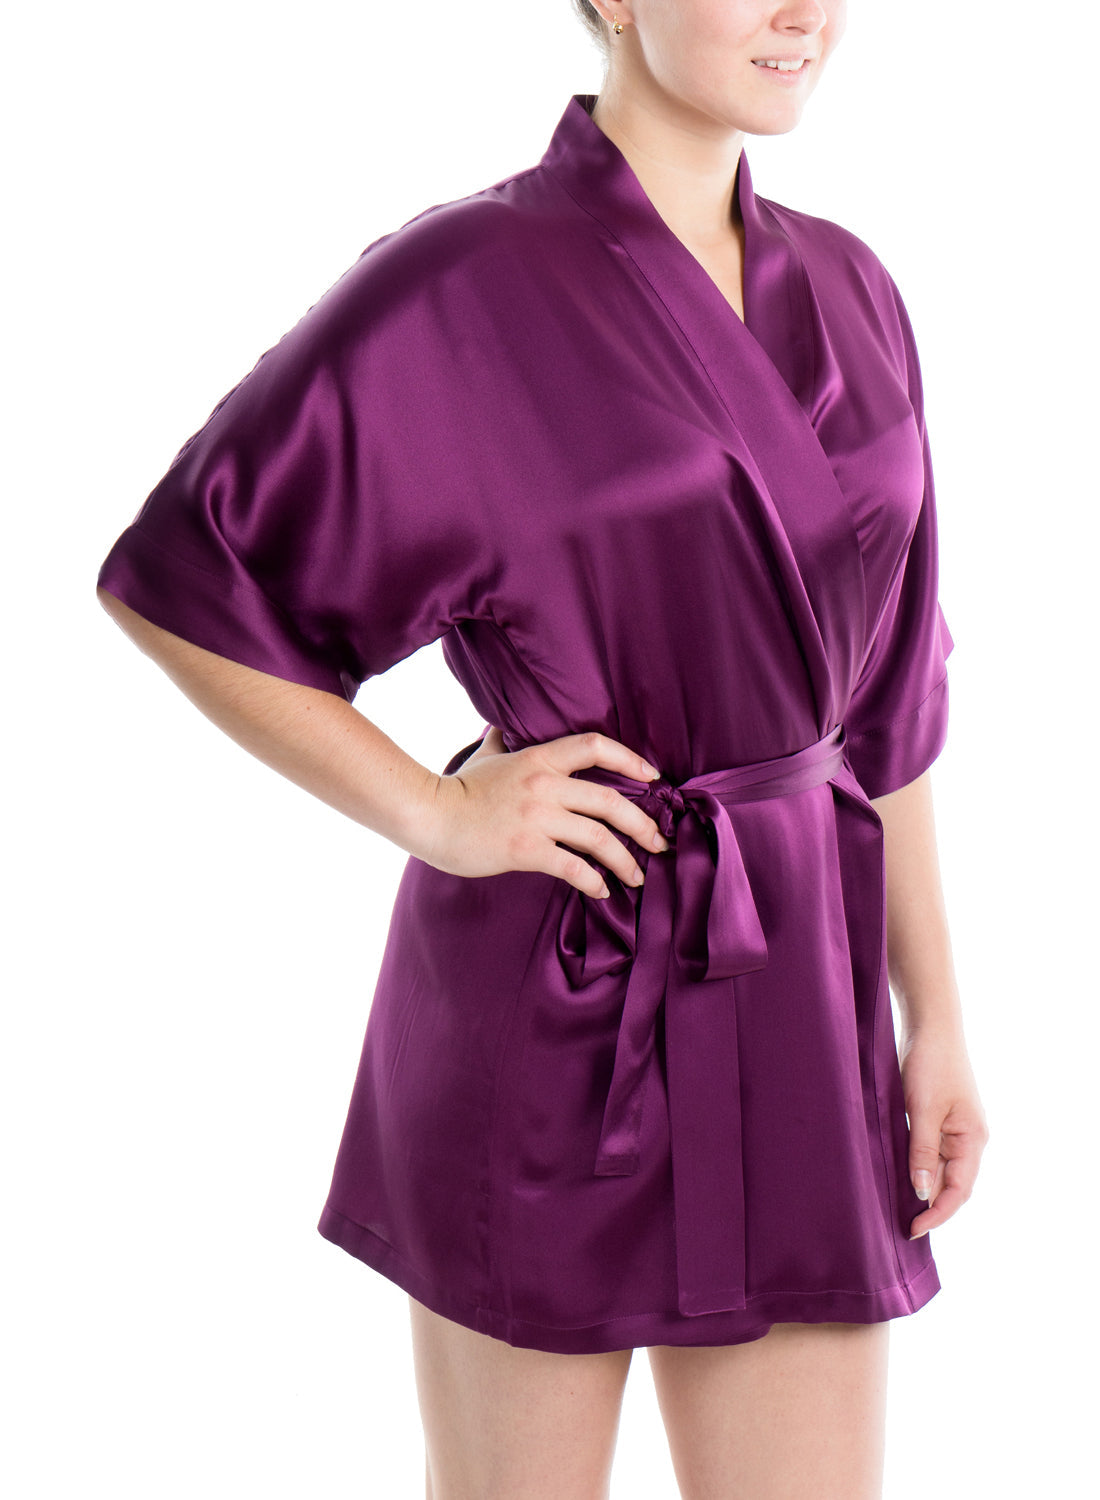 Women's Silk Sleepwear 100% Silk Short Robe, Sold Ruby Wine, L